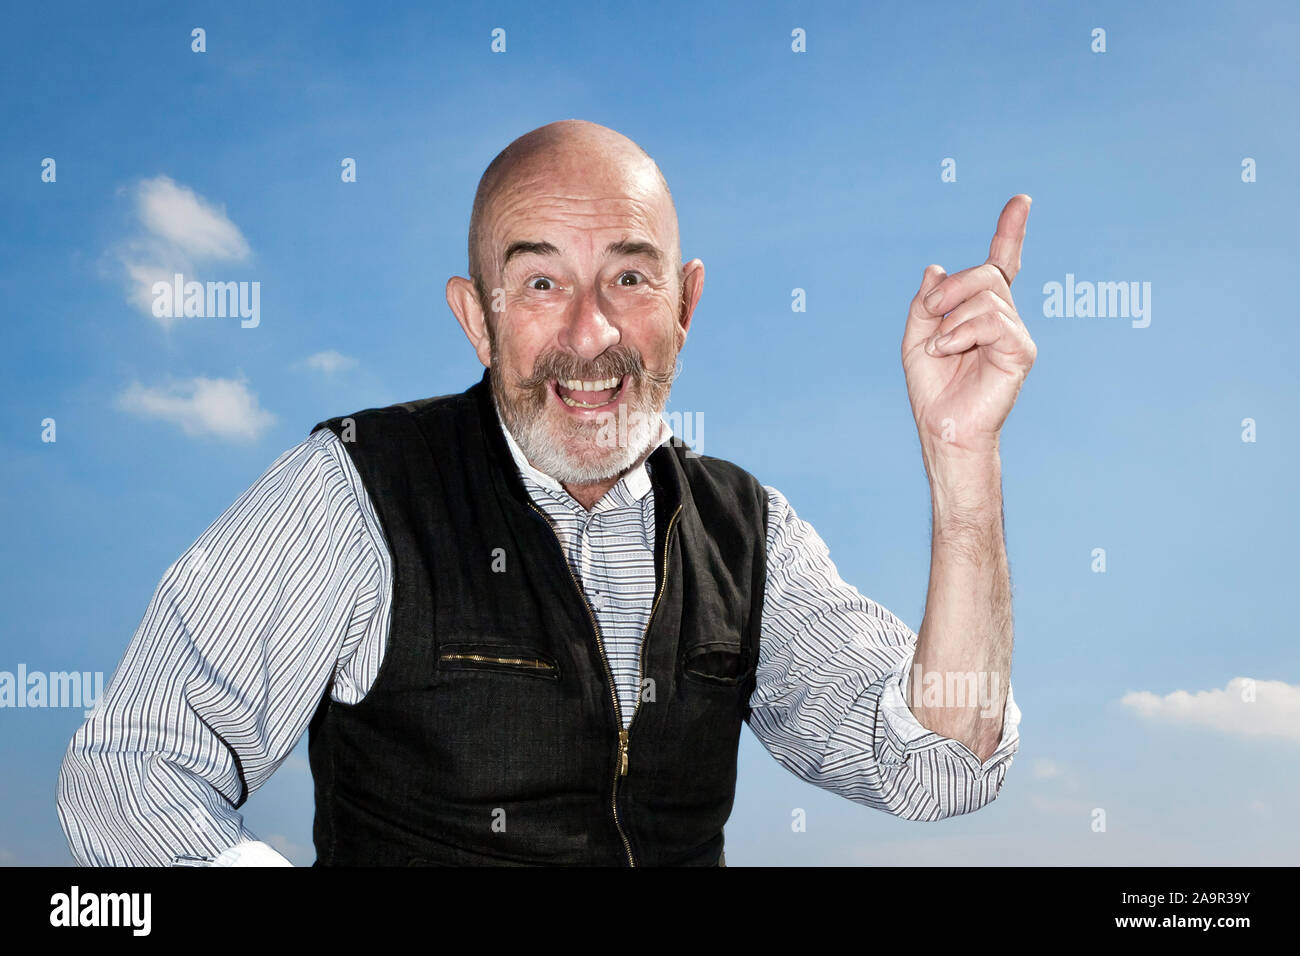 An old man with a grey beard is having an idea Stock Photo